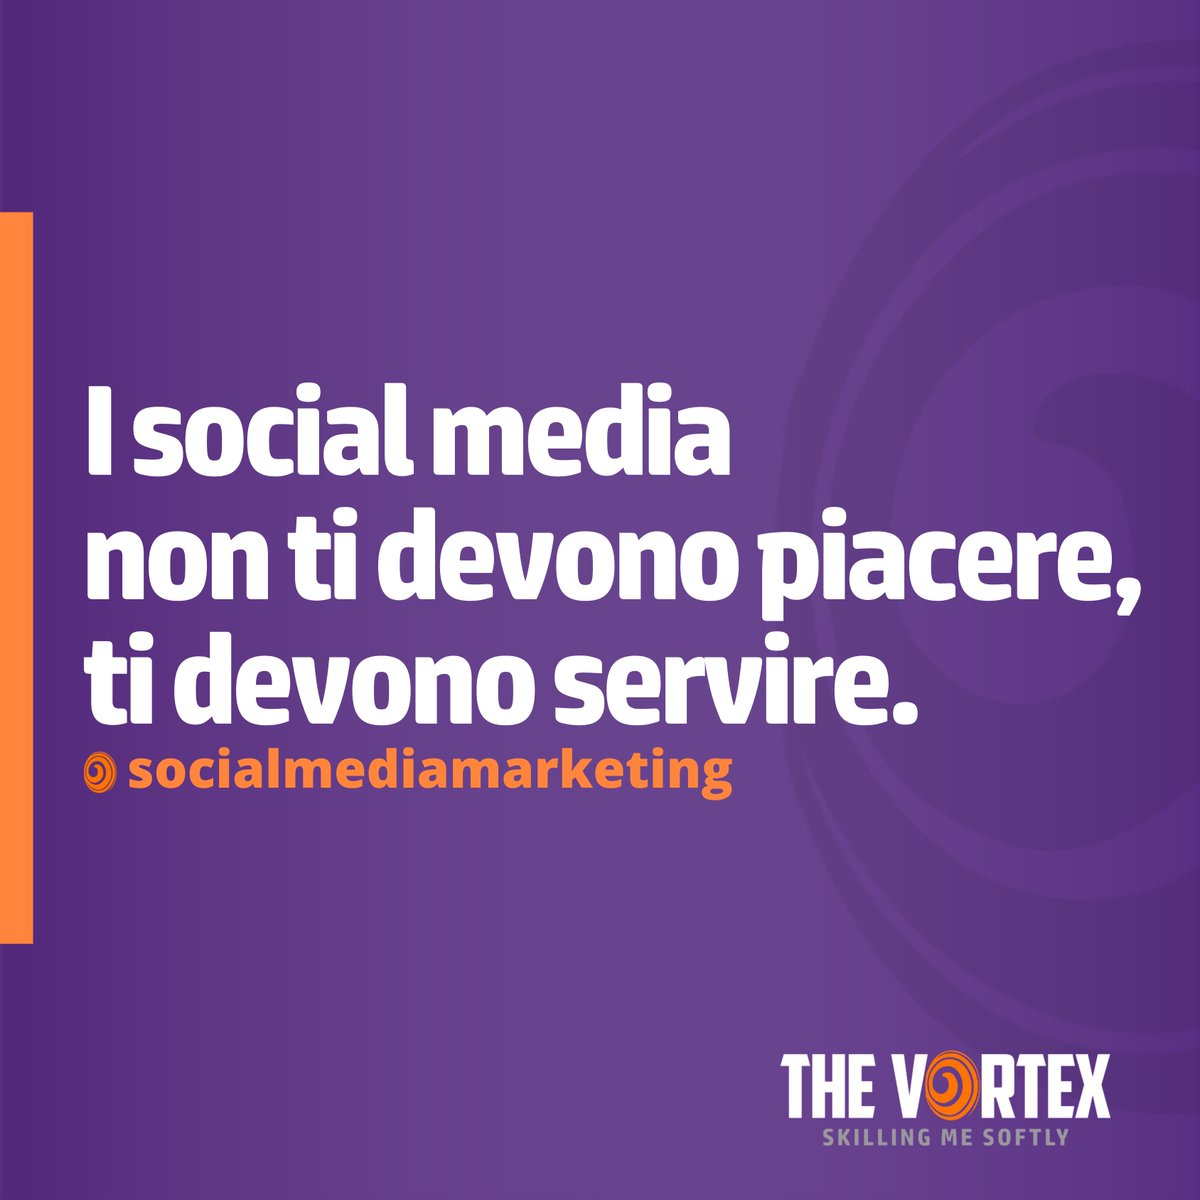 Nelle decisioni di marketing quello che ci deve guidare è l'utilità per il brand non il gradimento personale.

thevortex.it
#thevortex #socialmediamarketing